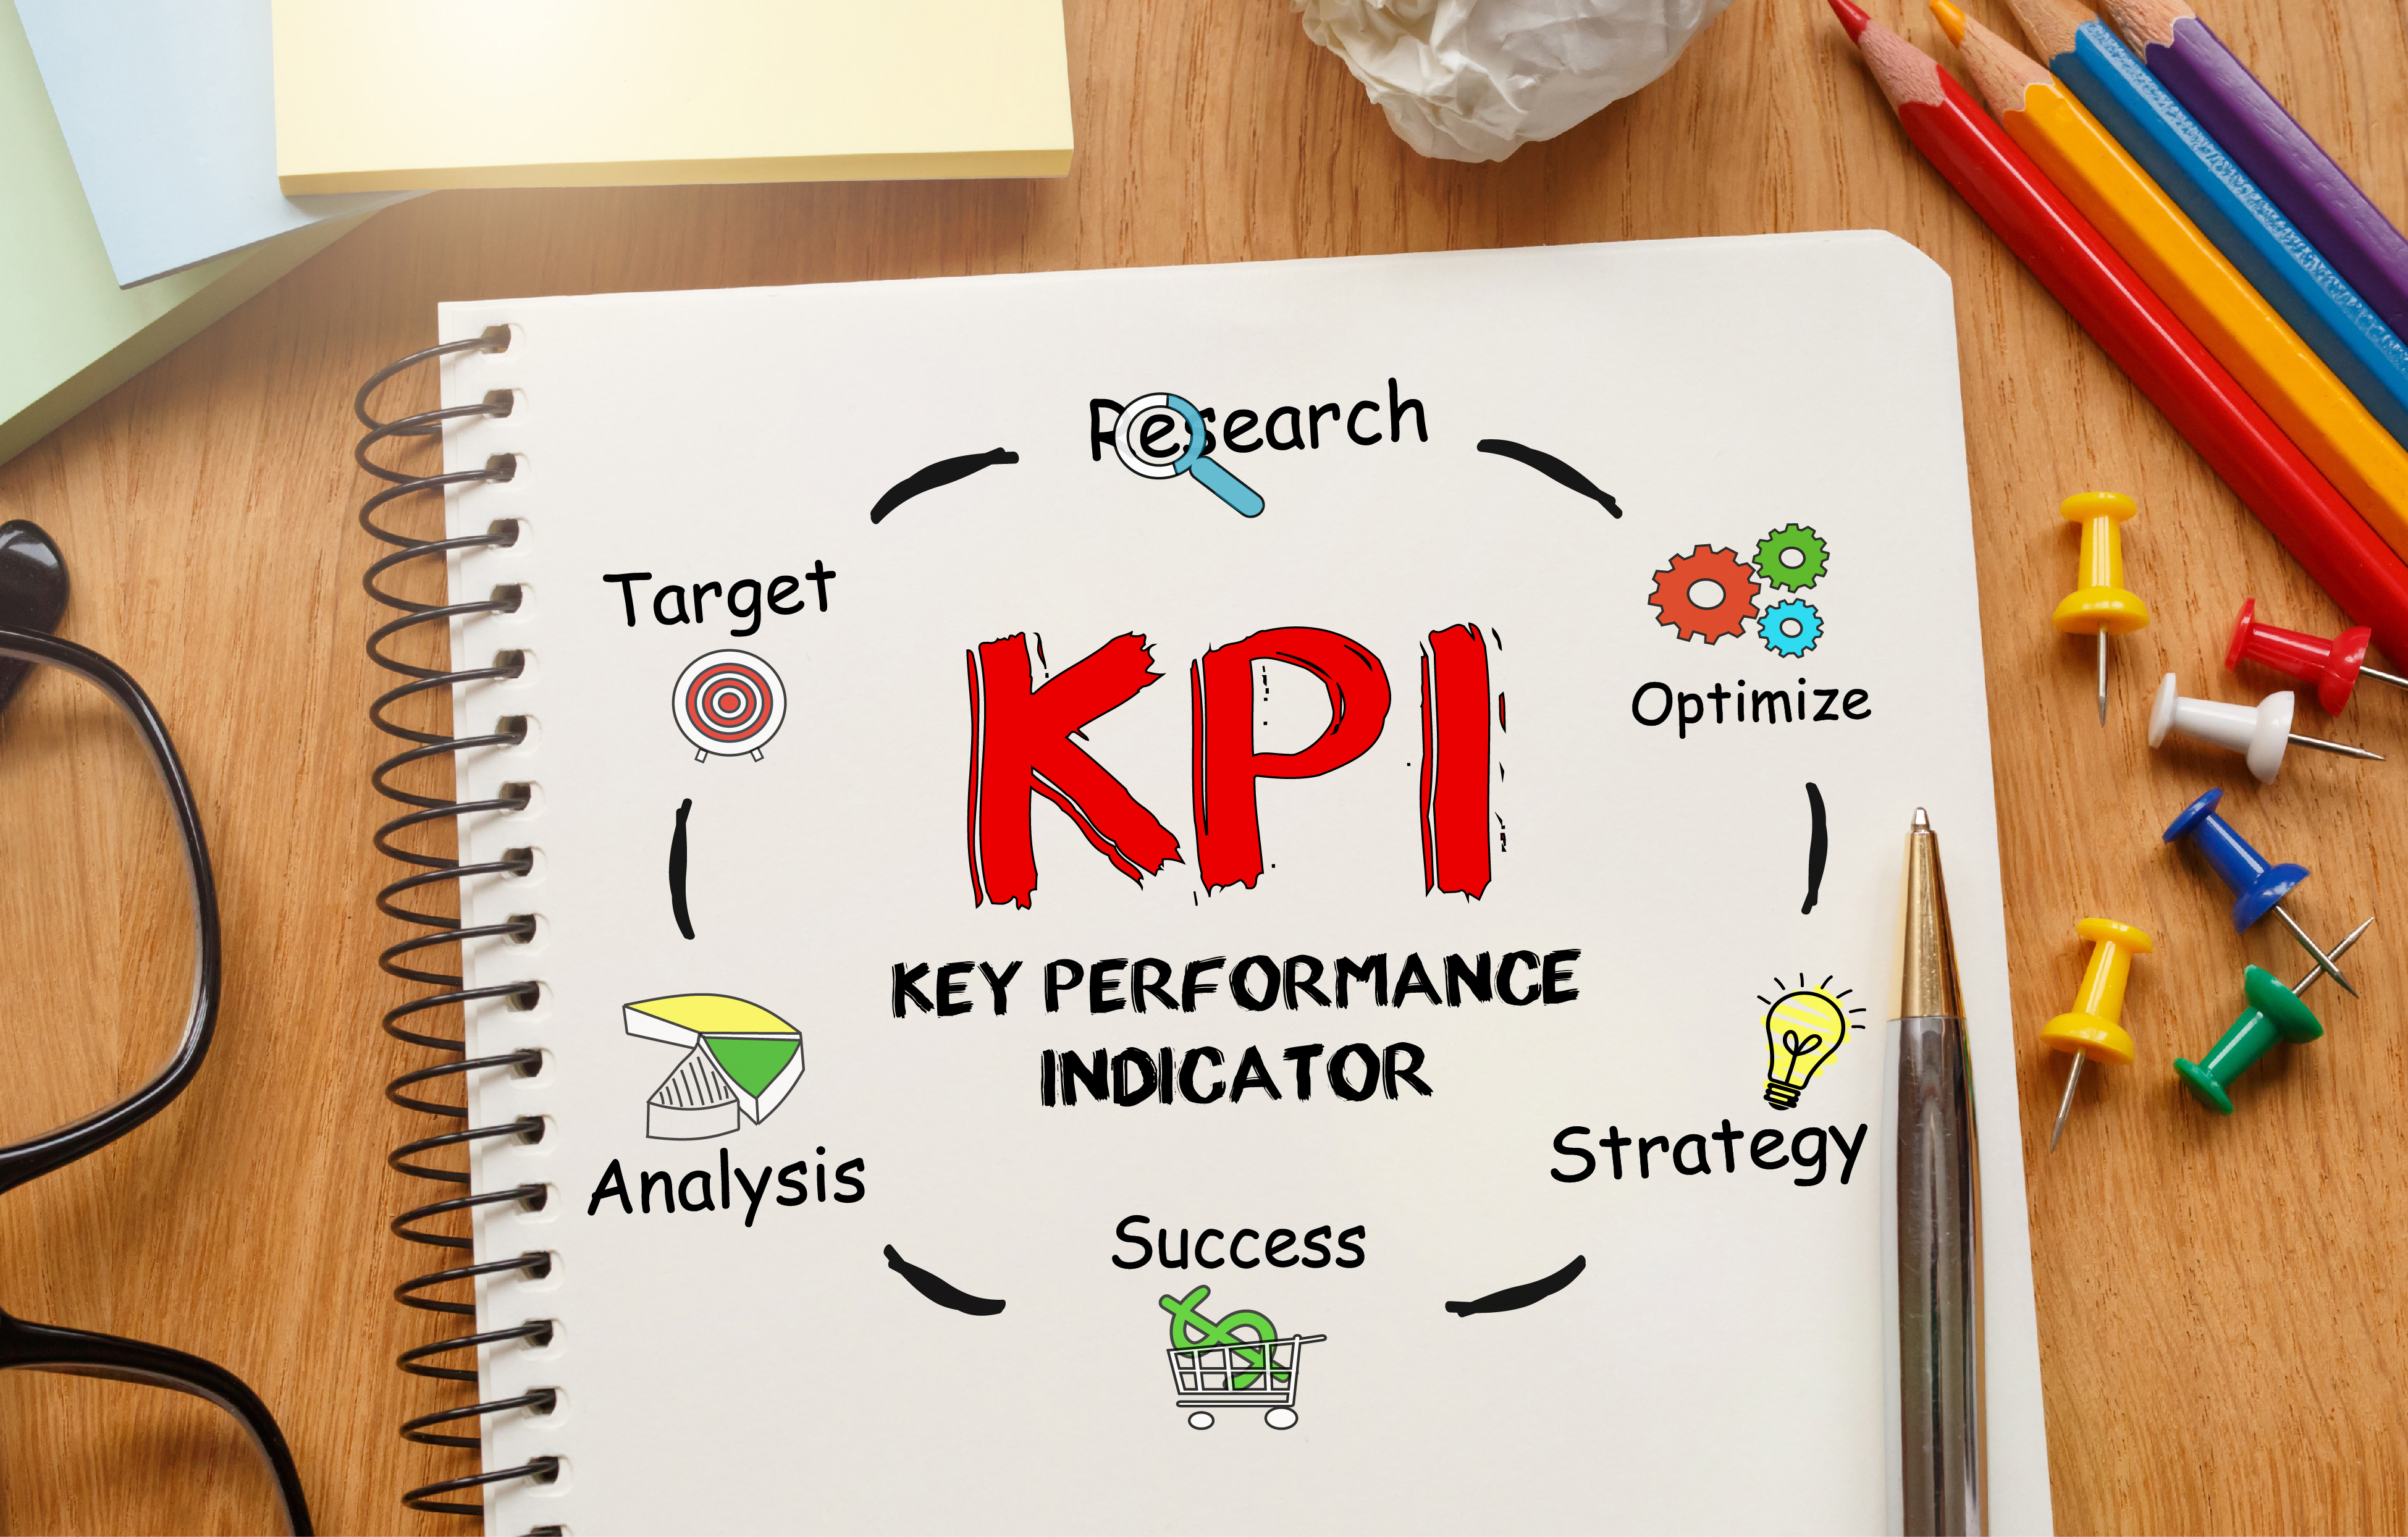 Die Infografik erklärt Key Performance Indikatoren